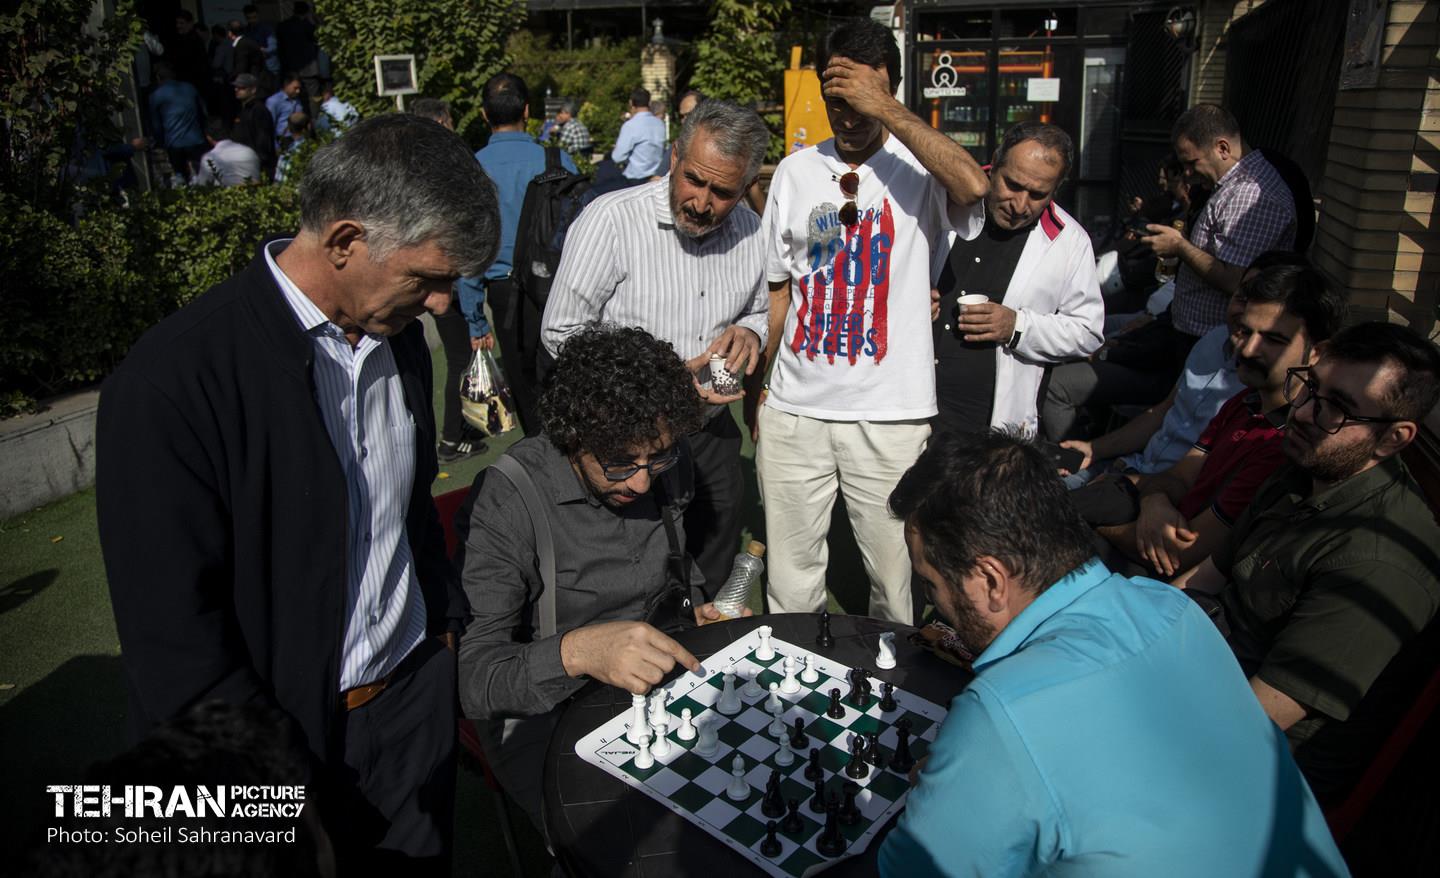  مسابقات شطرنج ویژه شاغلین در شهرداری برگزار شد